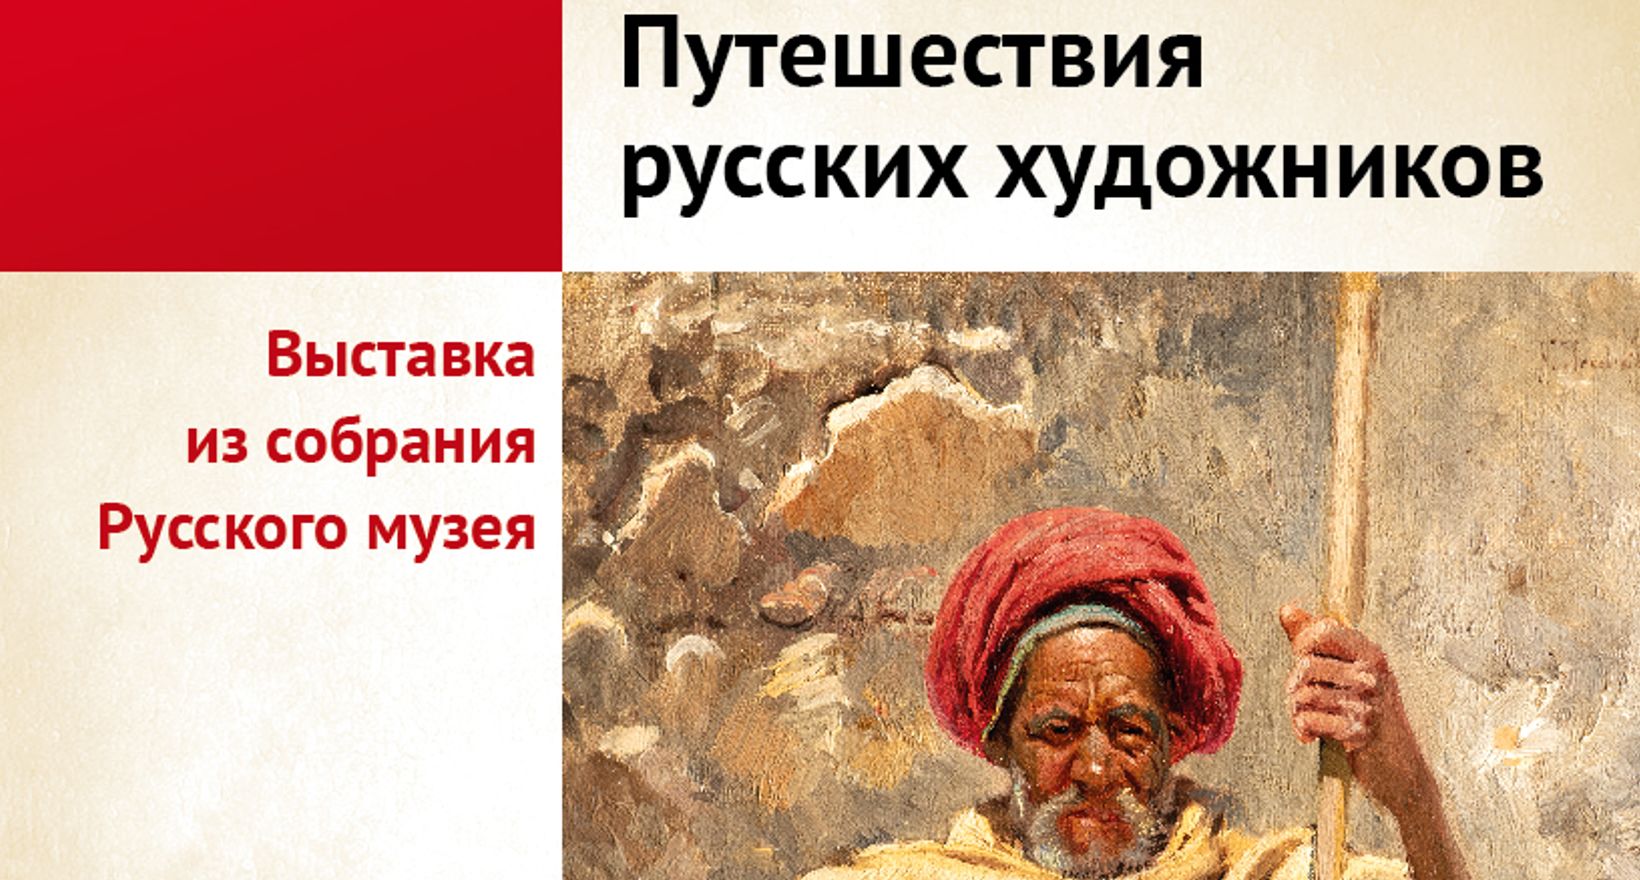 Выставка «Путешествия русских художников»